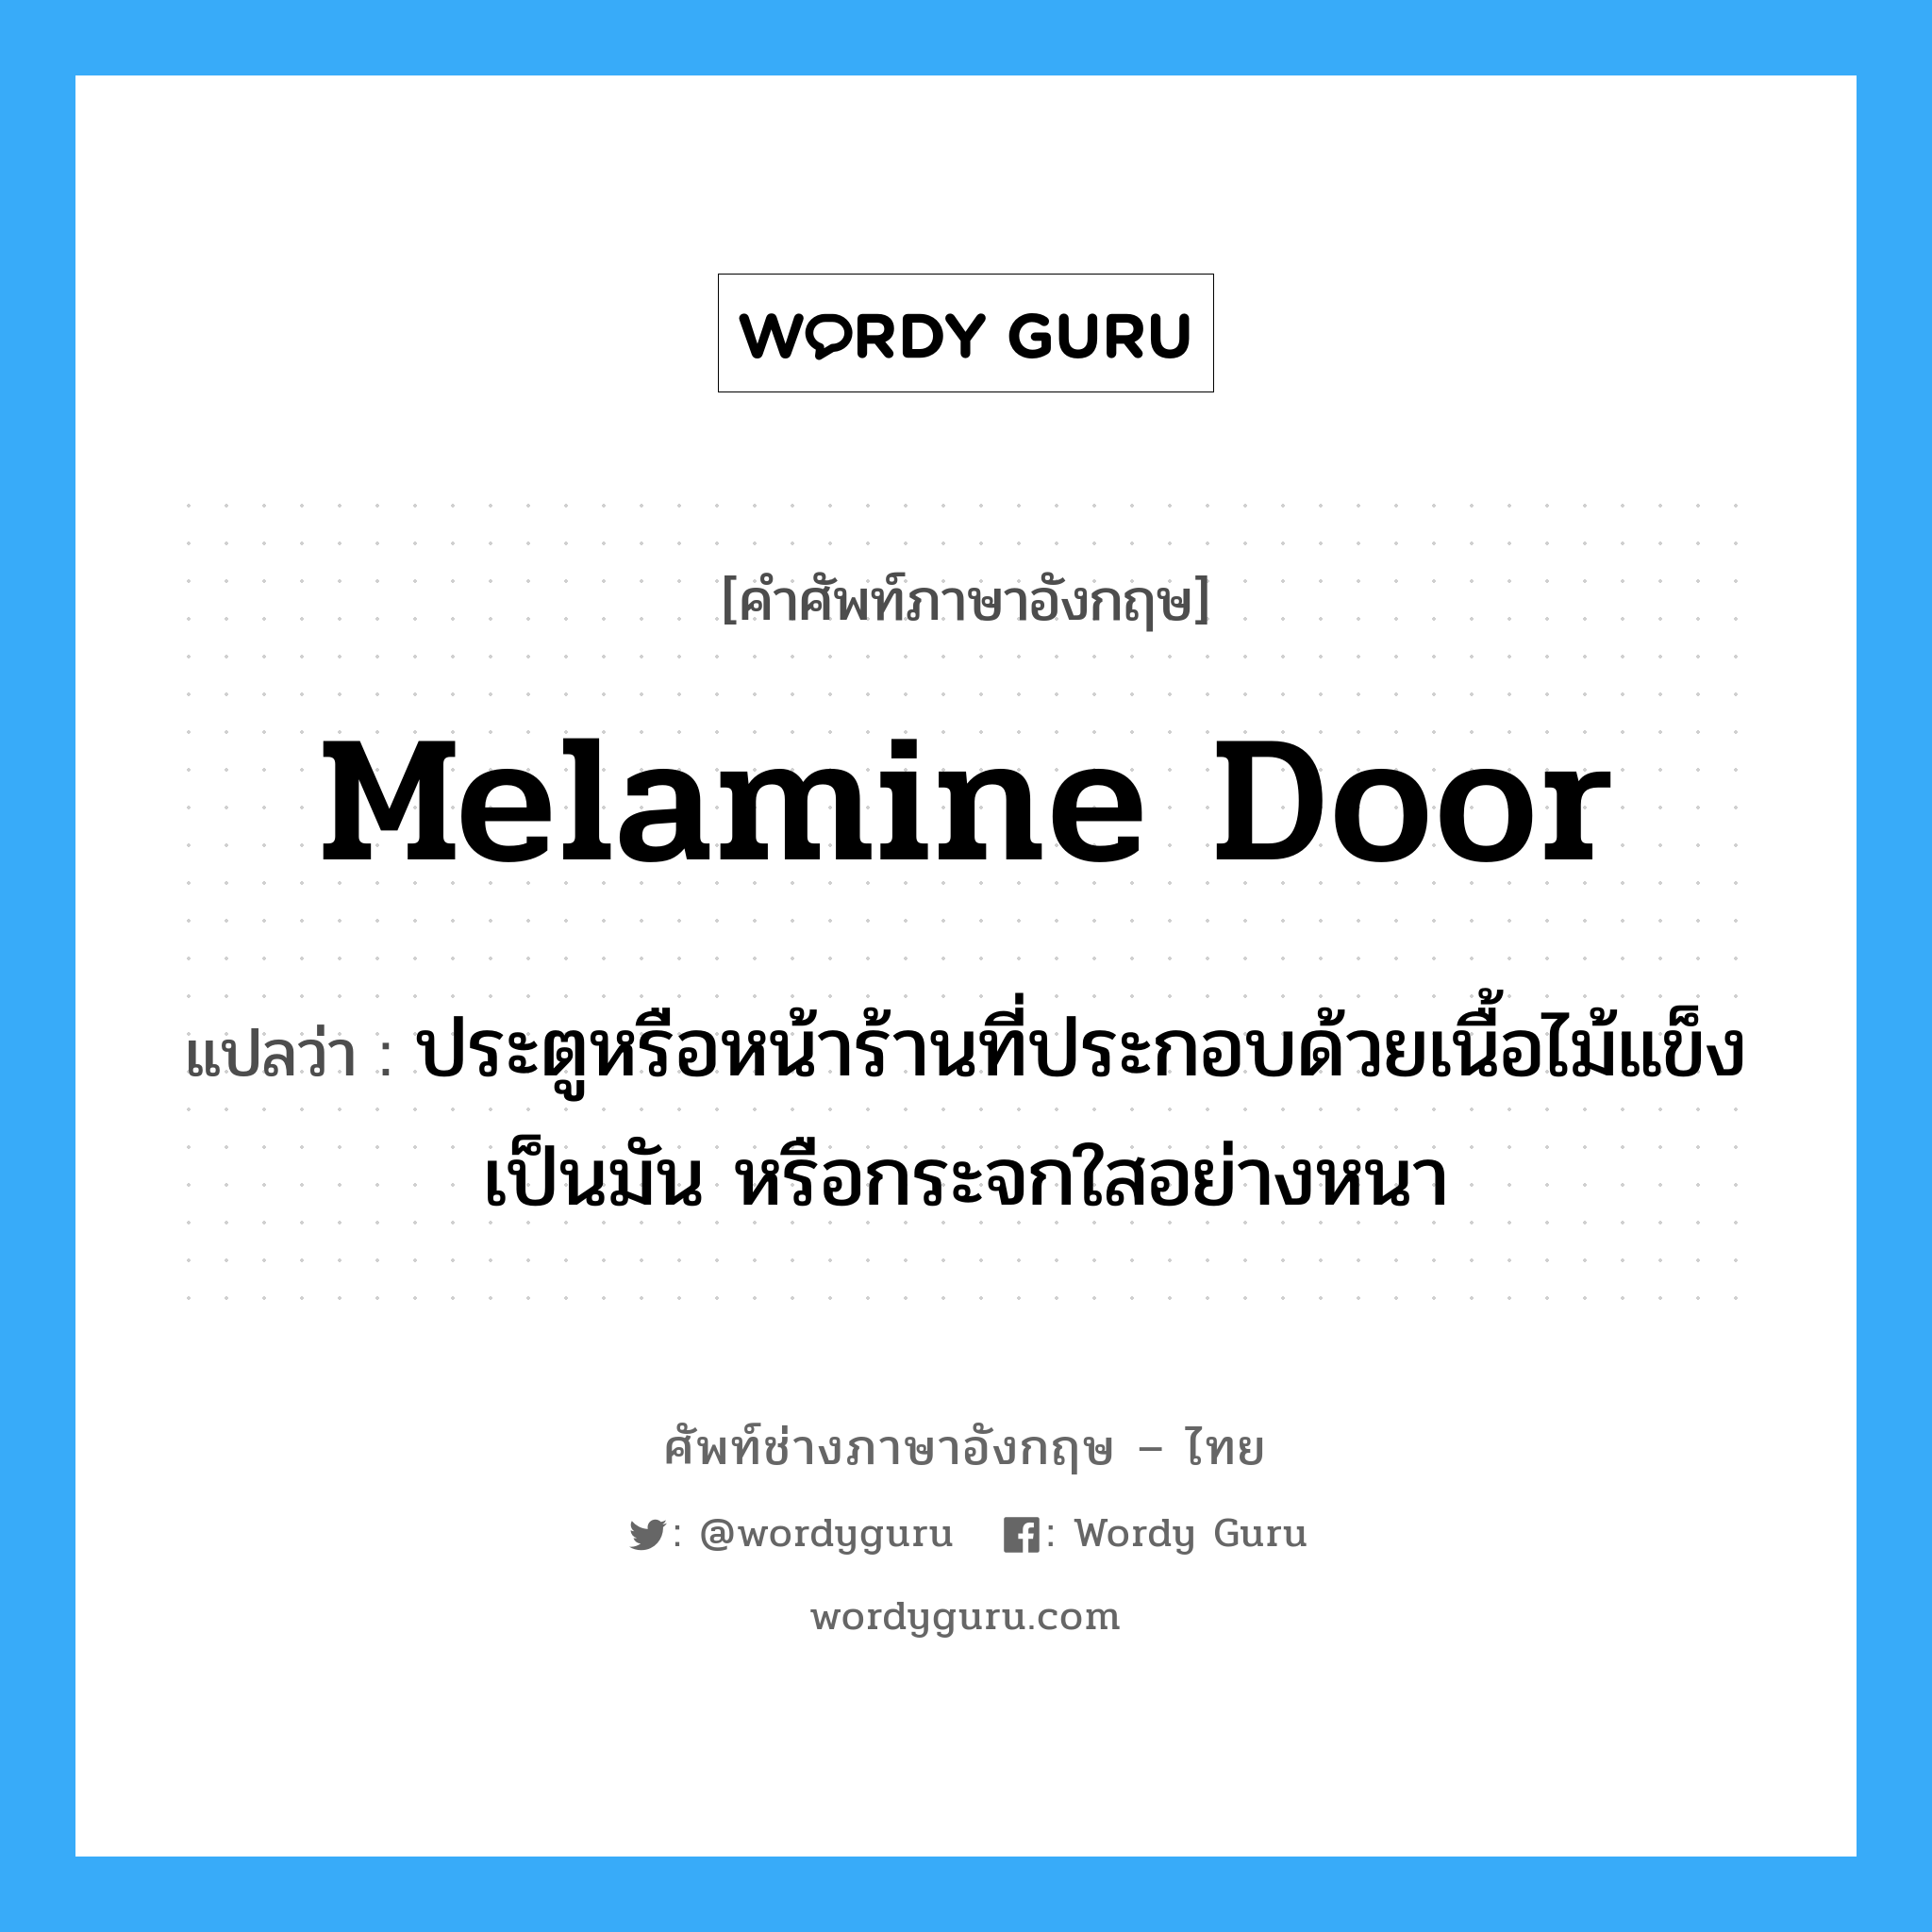 melamine door แปลว่า?, คำศัพท์ช่างภาษาอังกฤษ - ไทย melamine door คำศัพท์ภาษาอังกฤษ melamine door แปลว่า ประตูหรือหน้าร้านที่ประกอบด้วยเนื้อไม้แข็งเป็นมัน หรือกระจกใสอย่างหนา